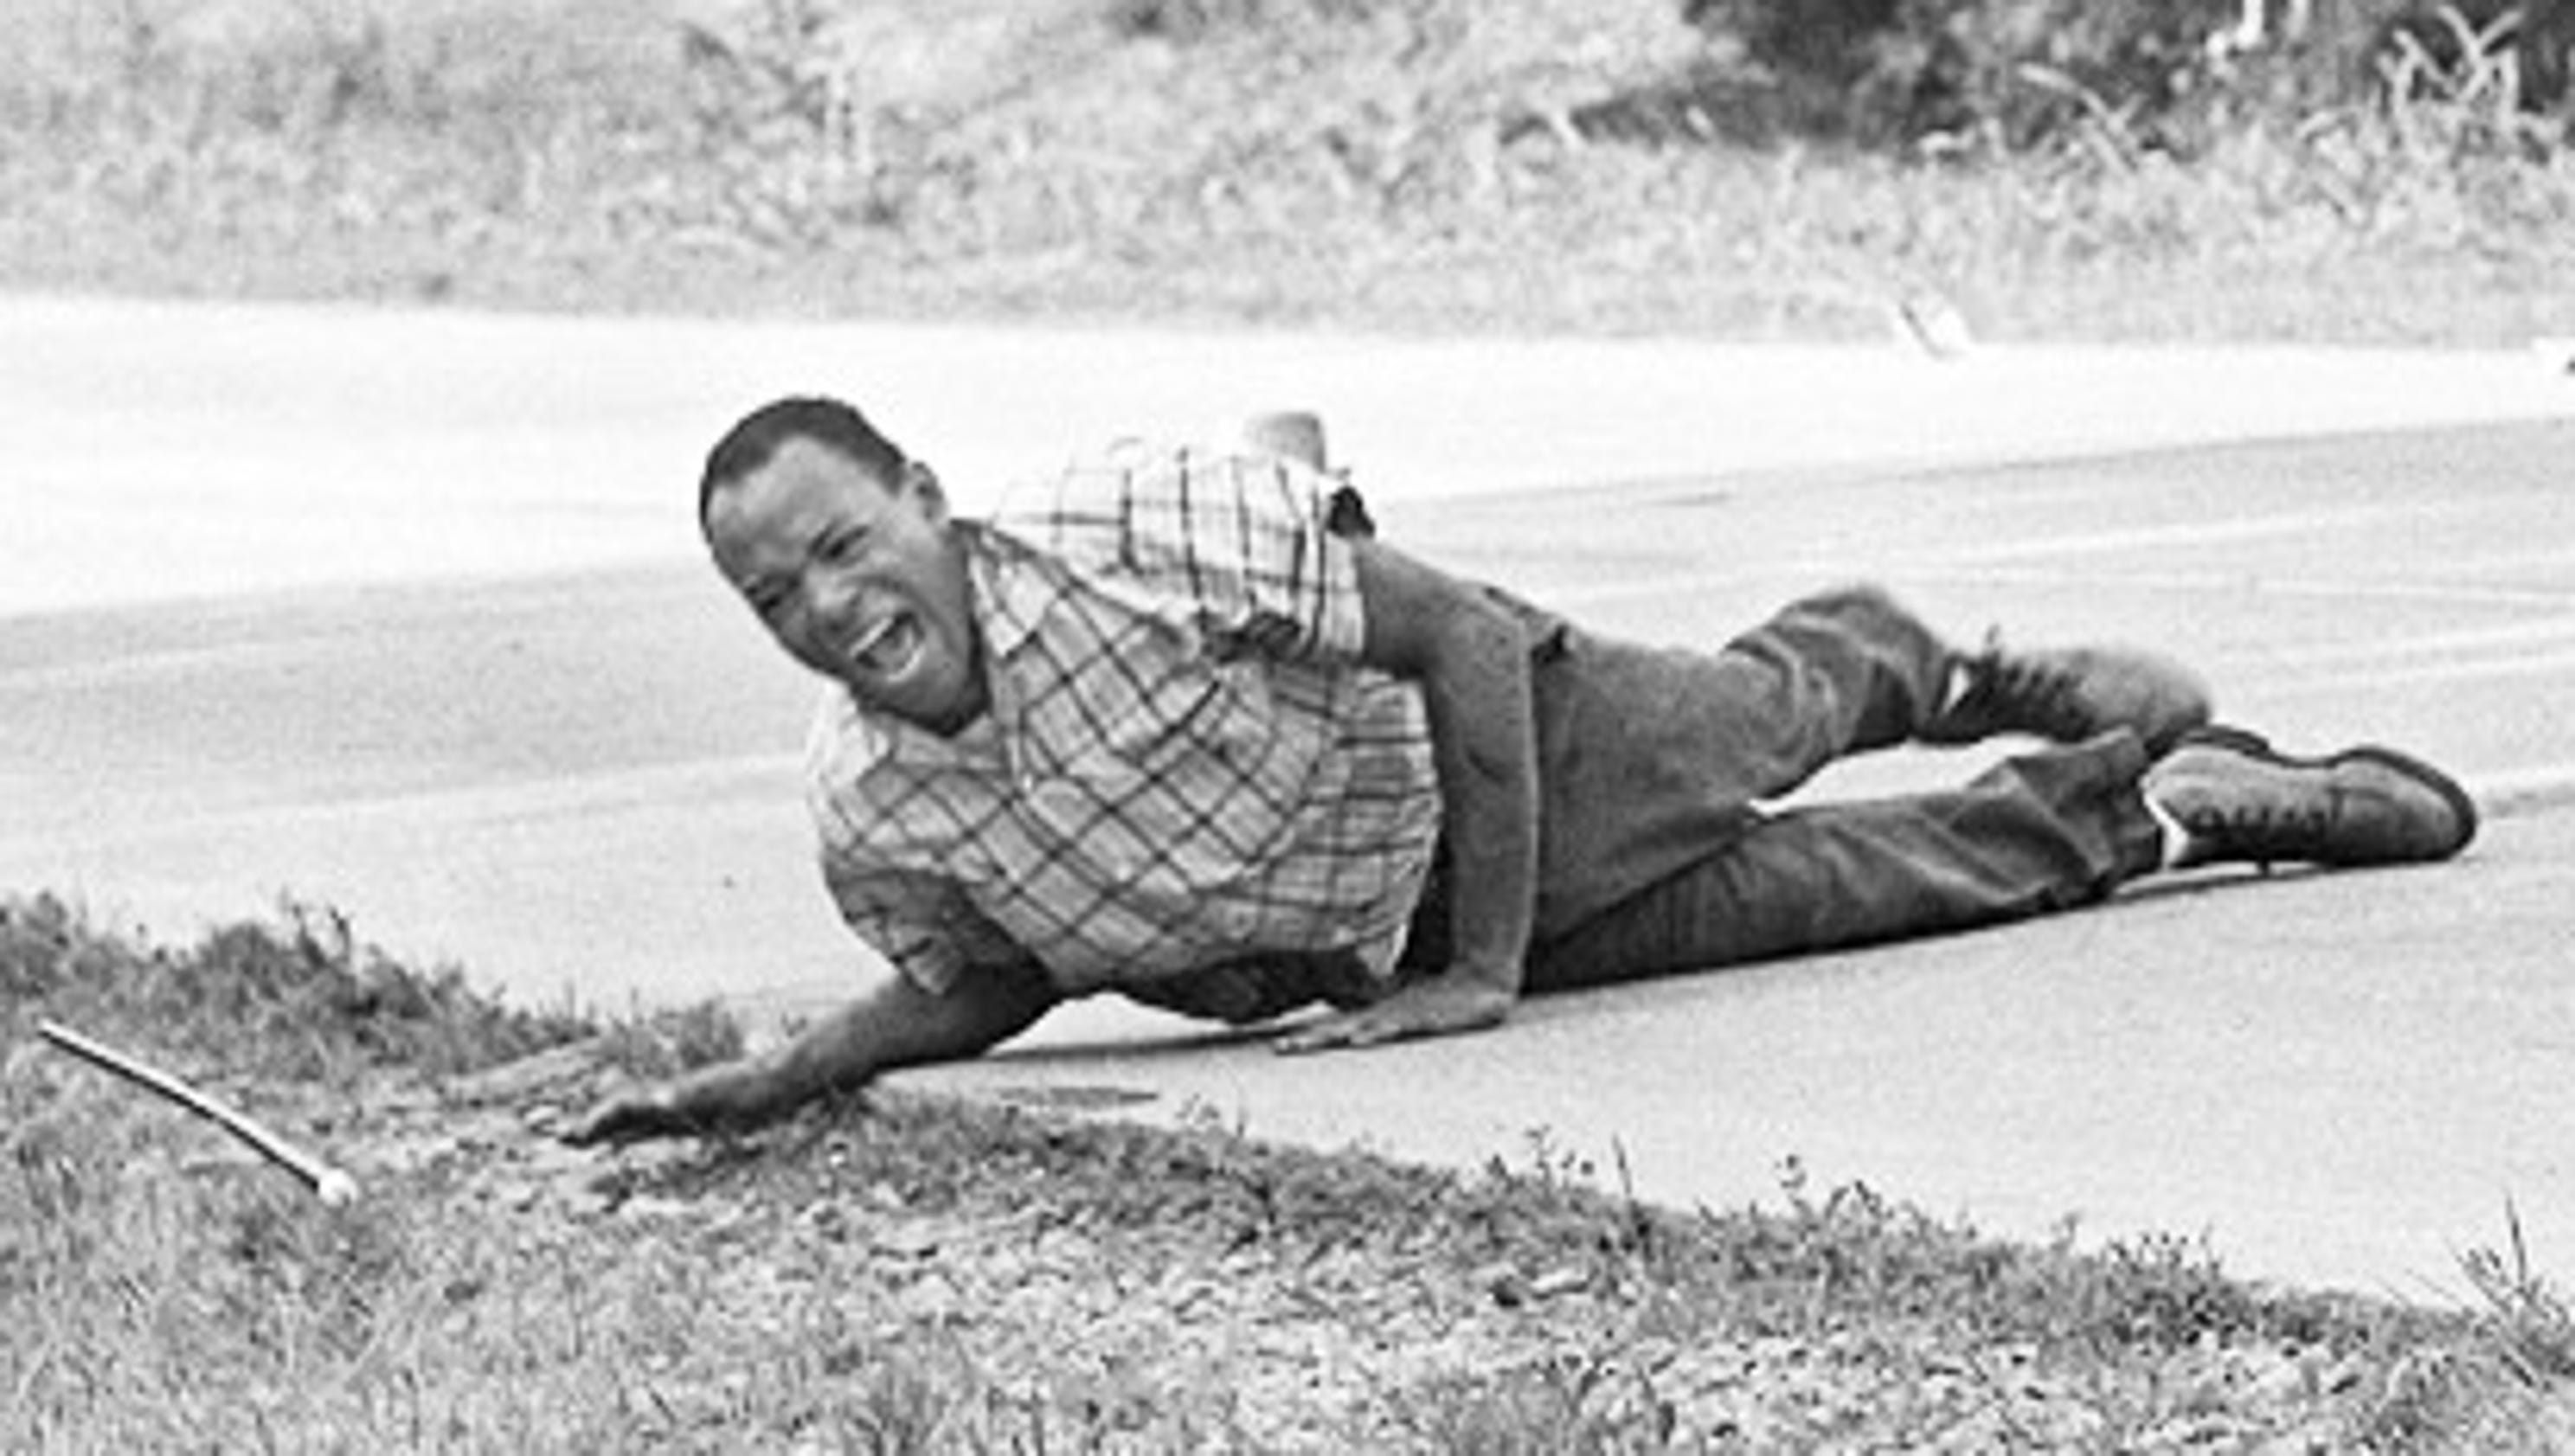 History: James Meredith shot, RFK assassinated